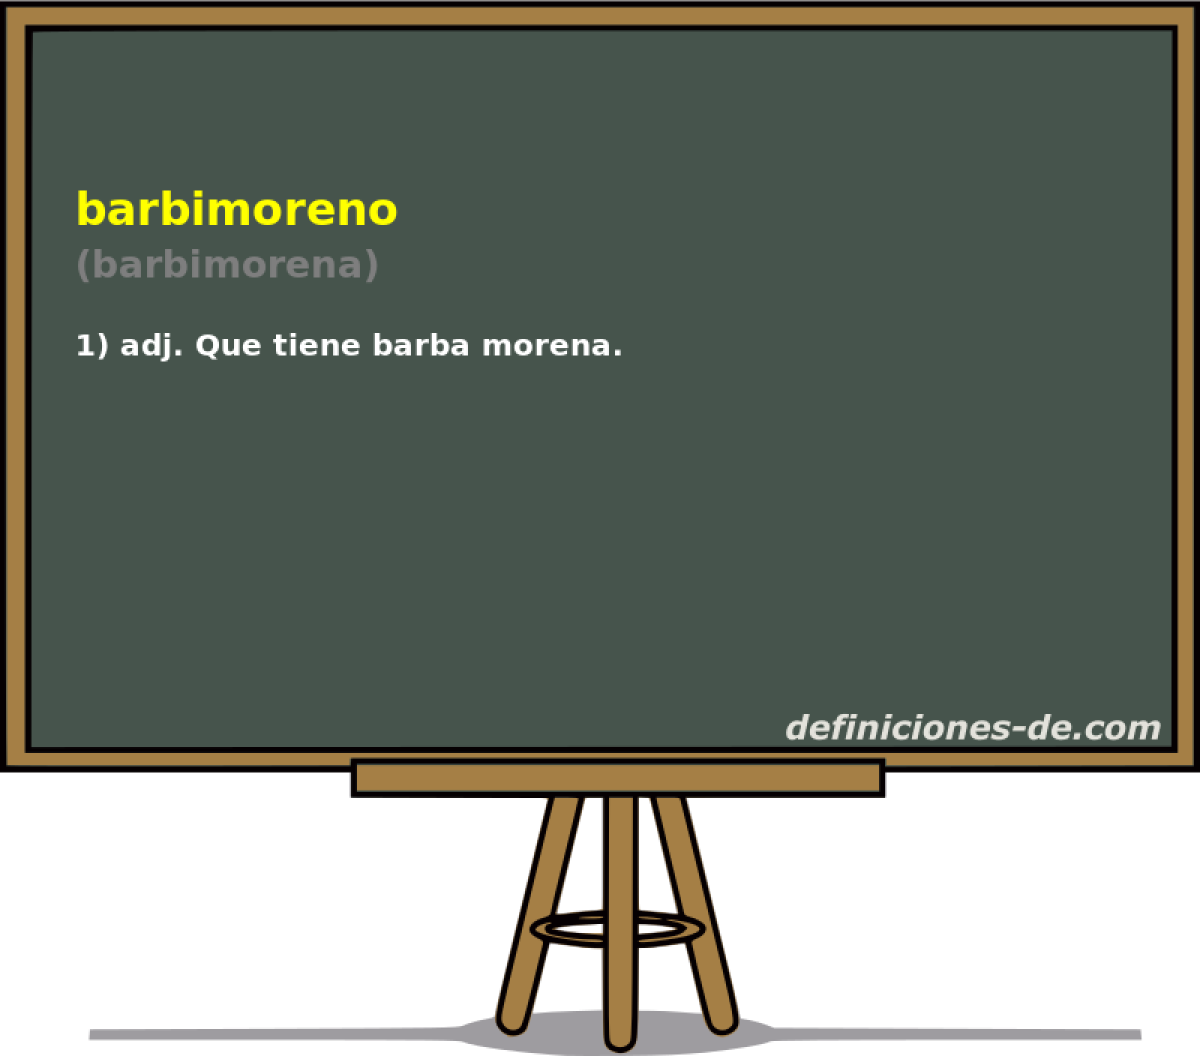 barbimoreno (barbimorena)